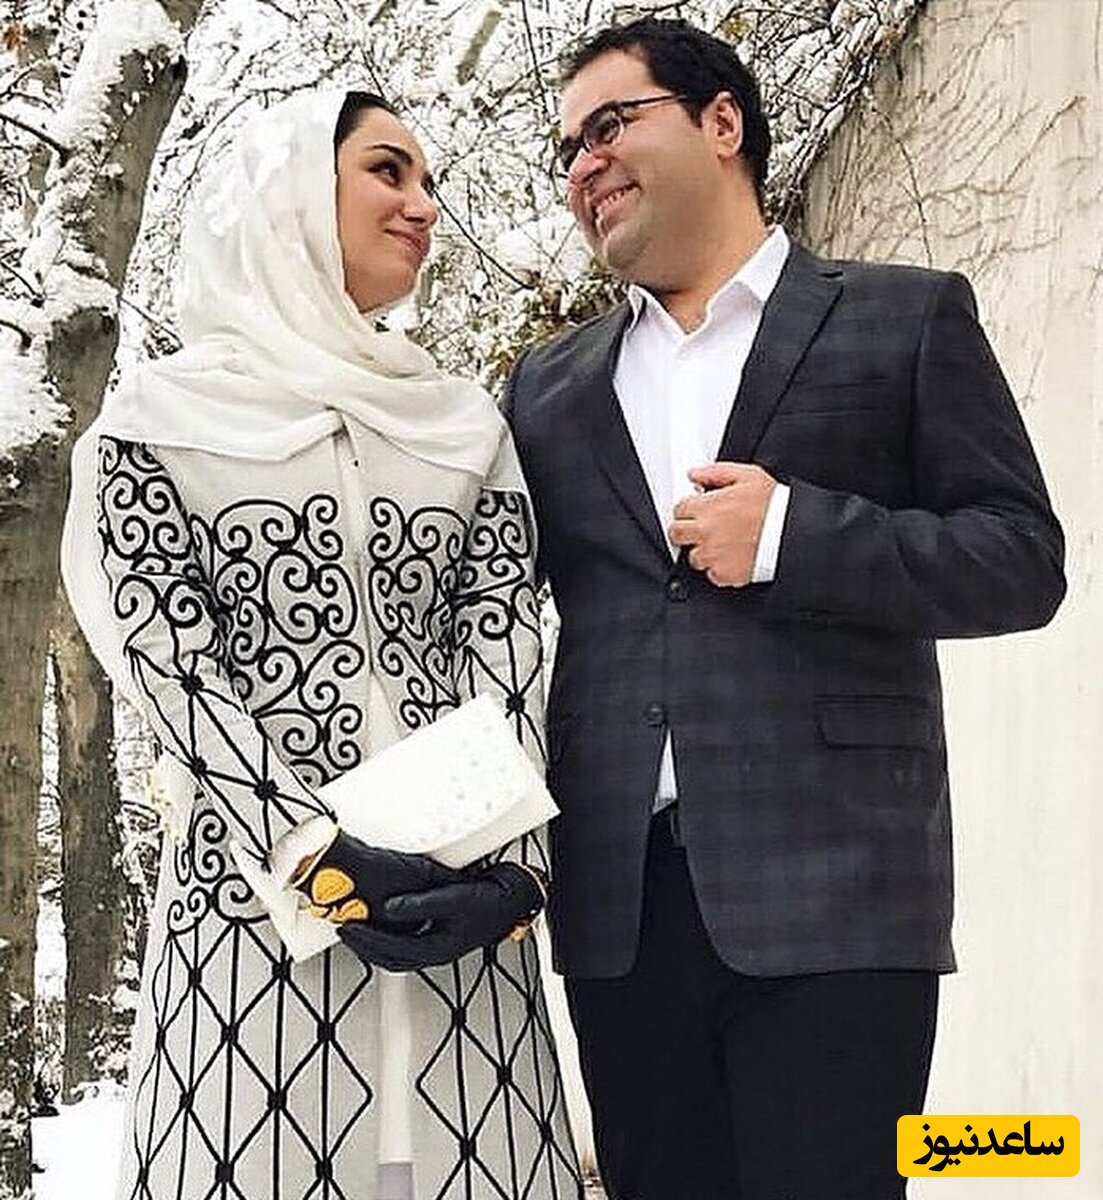 تنها محلِ قرارِ بی قراری های همسر ریحانه یاسینی/ زوج خبرنگاری که تلخ از هم جدا شدند